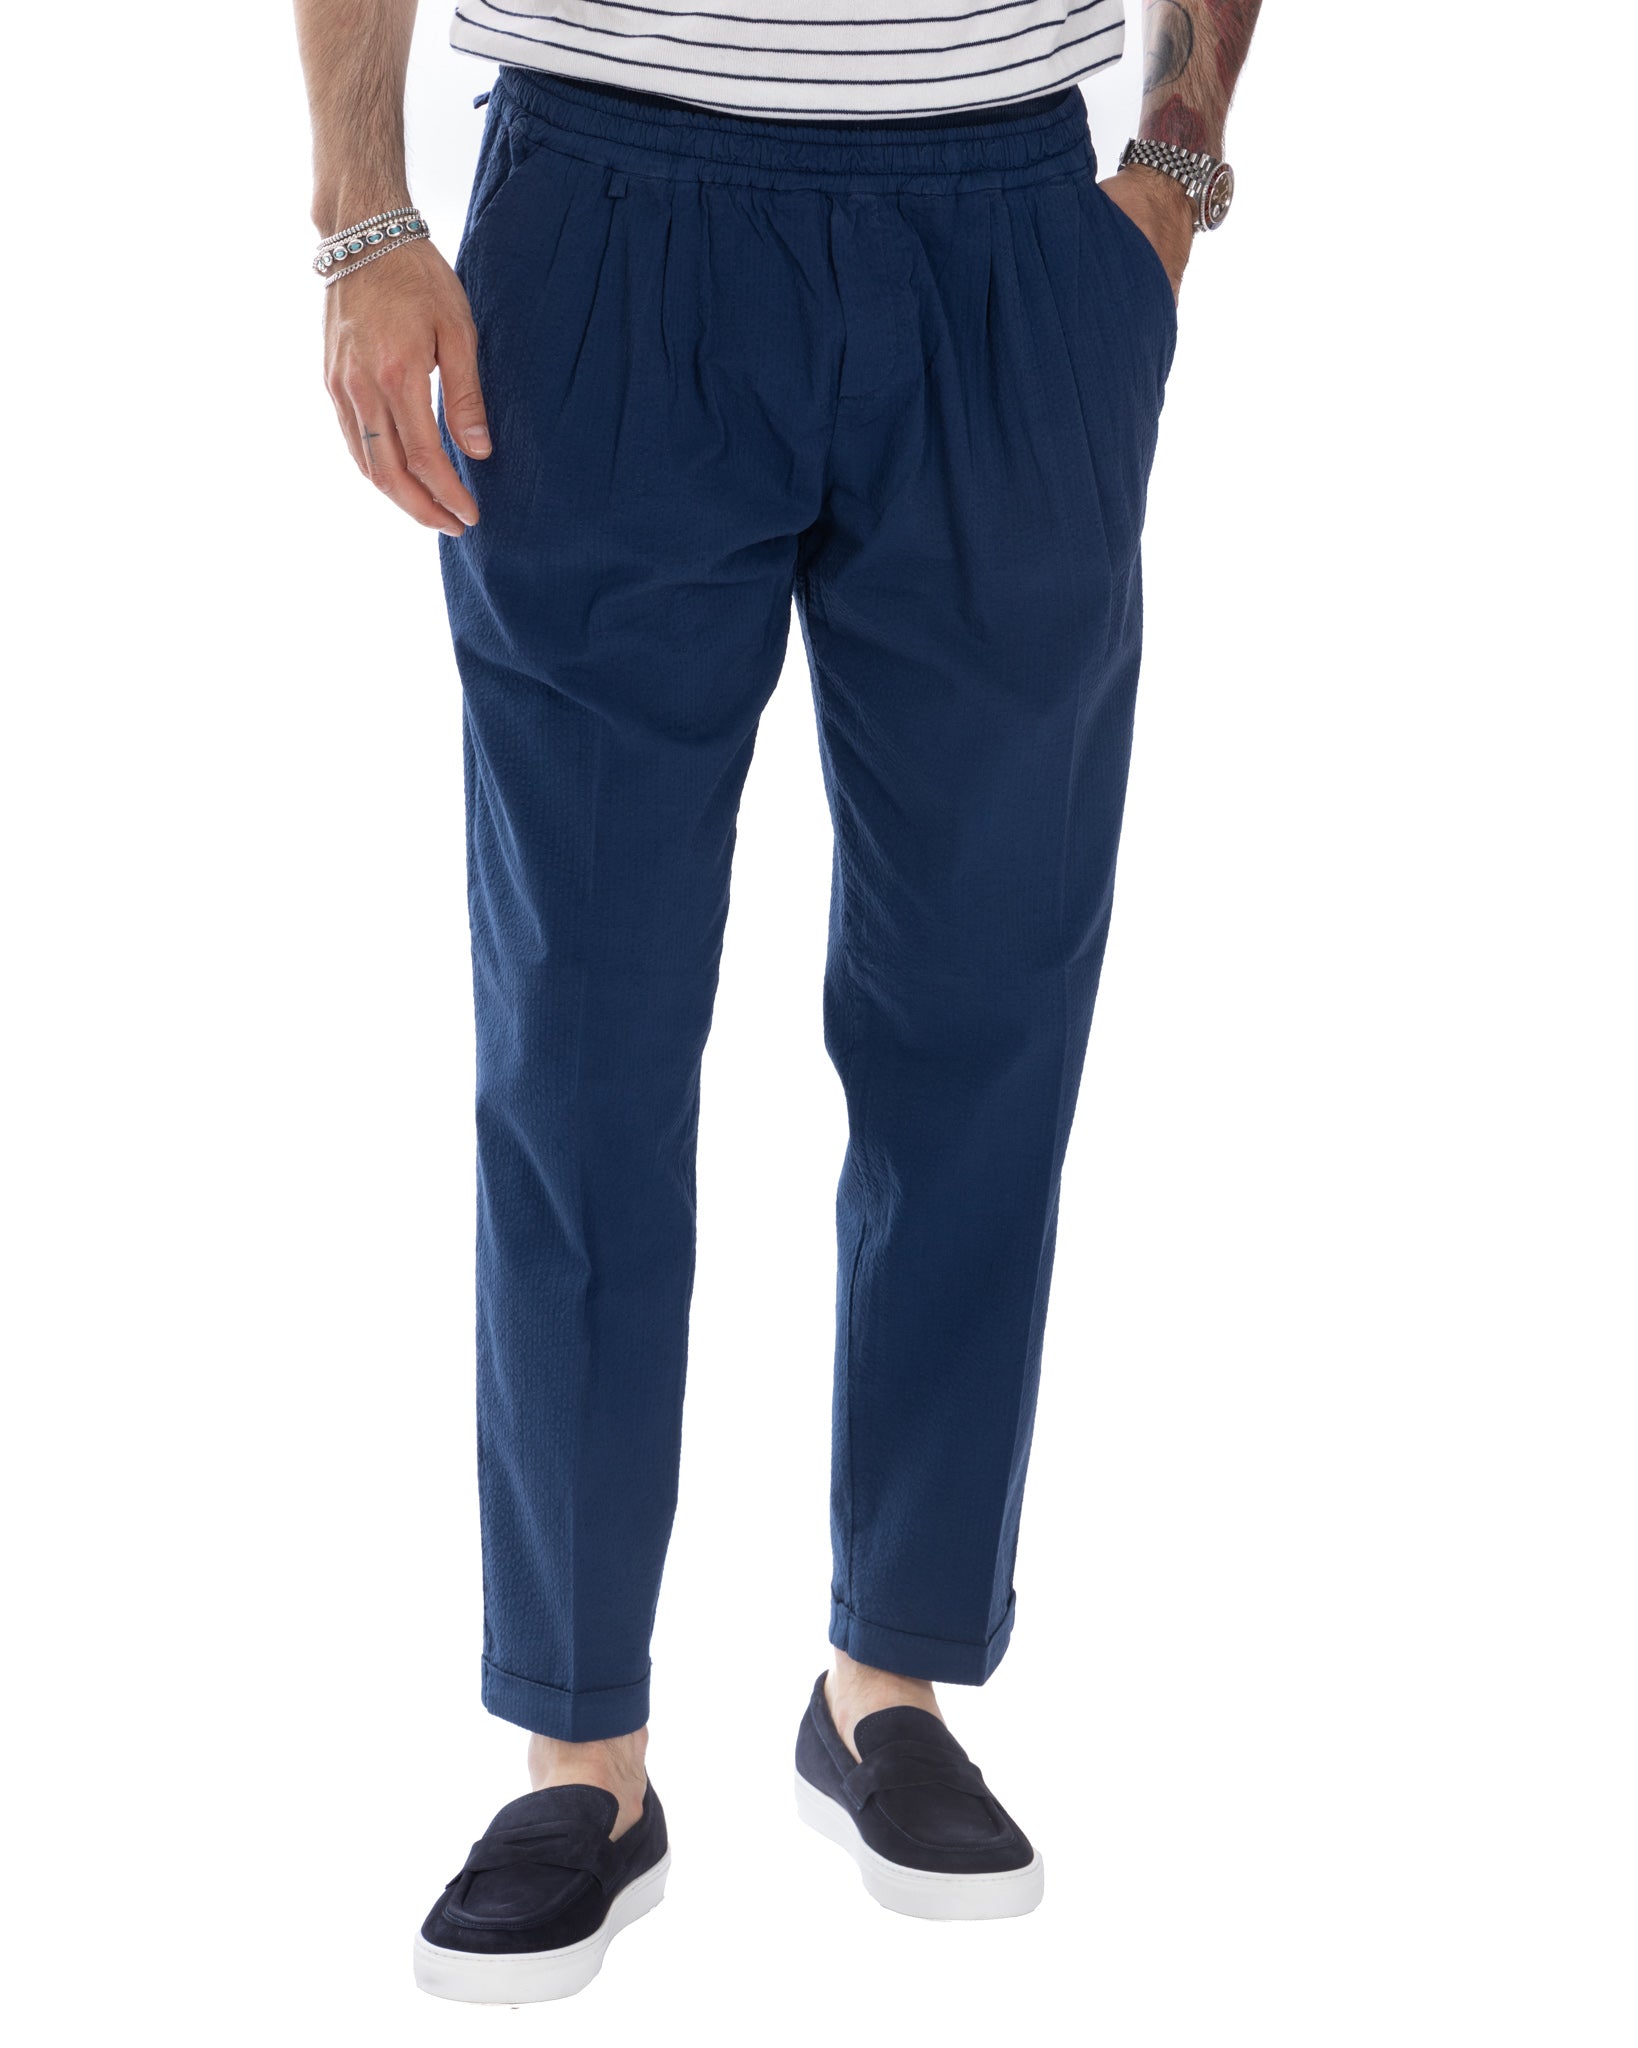 Liam - pantalon gaufré bleu bleuet